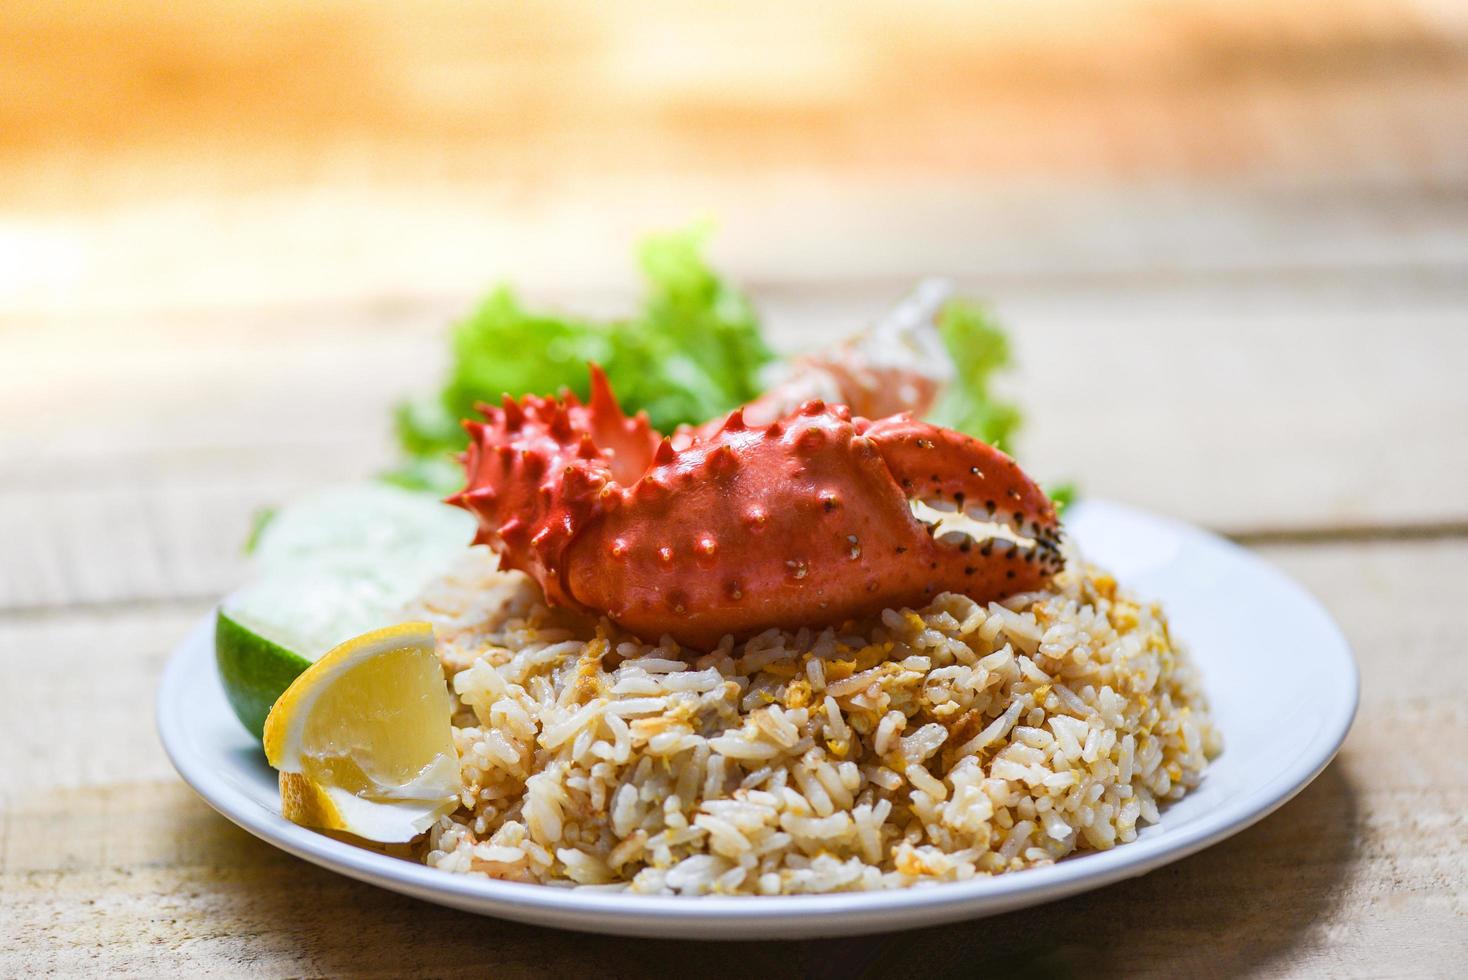 arroz frito cangrejo mariscos comida saludable arroz frito con garra de cangrejo con huevo limón y pepino en plato blanco mesa de madera foto